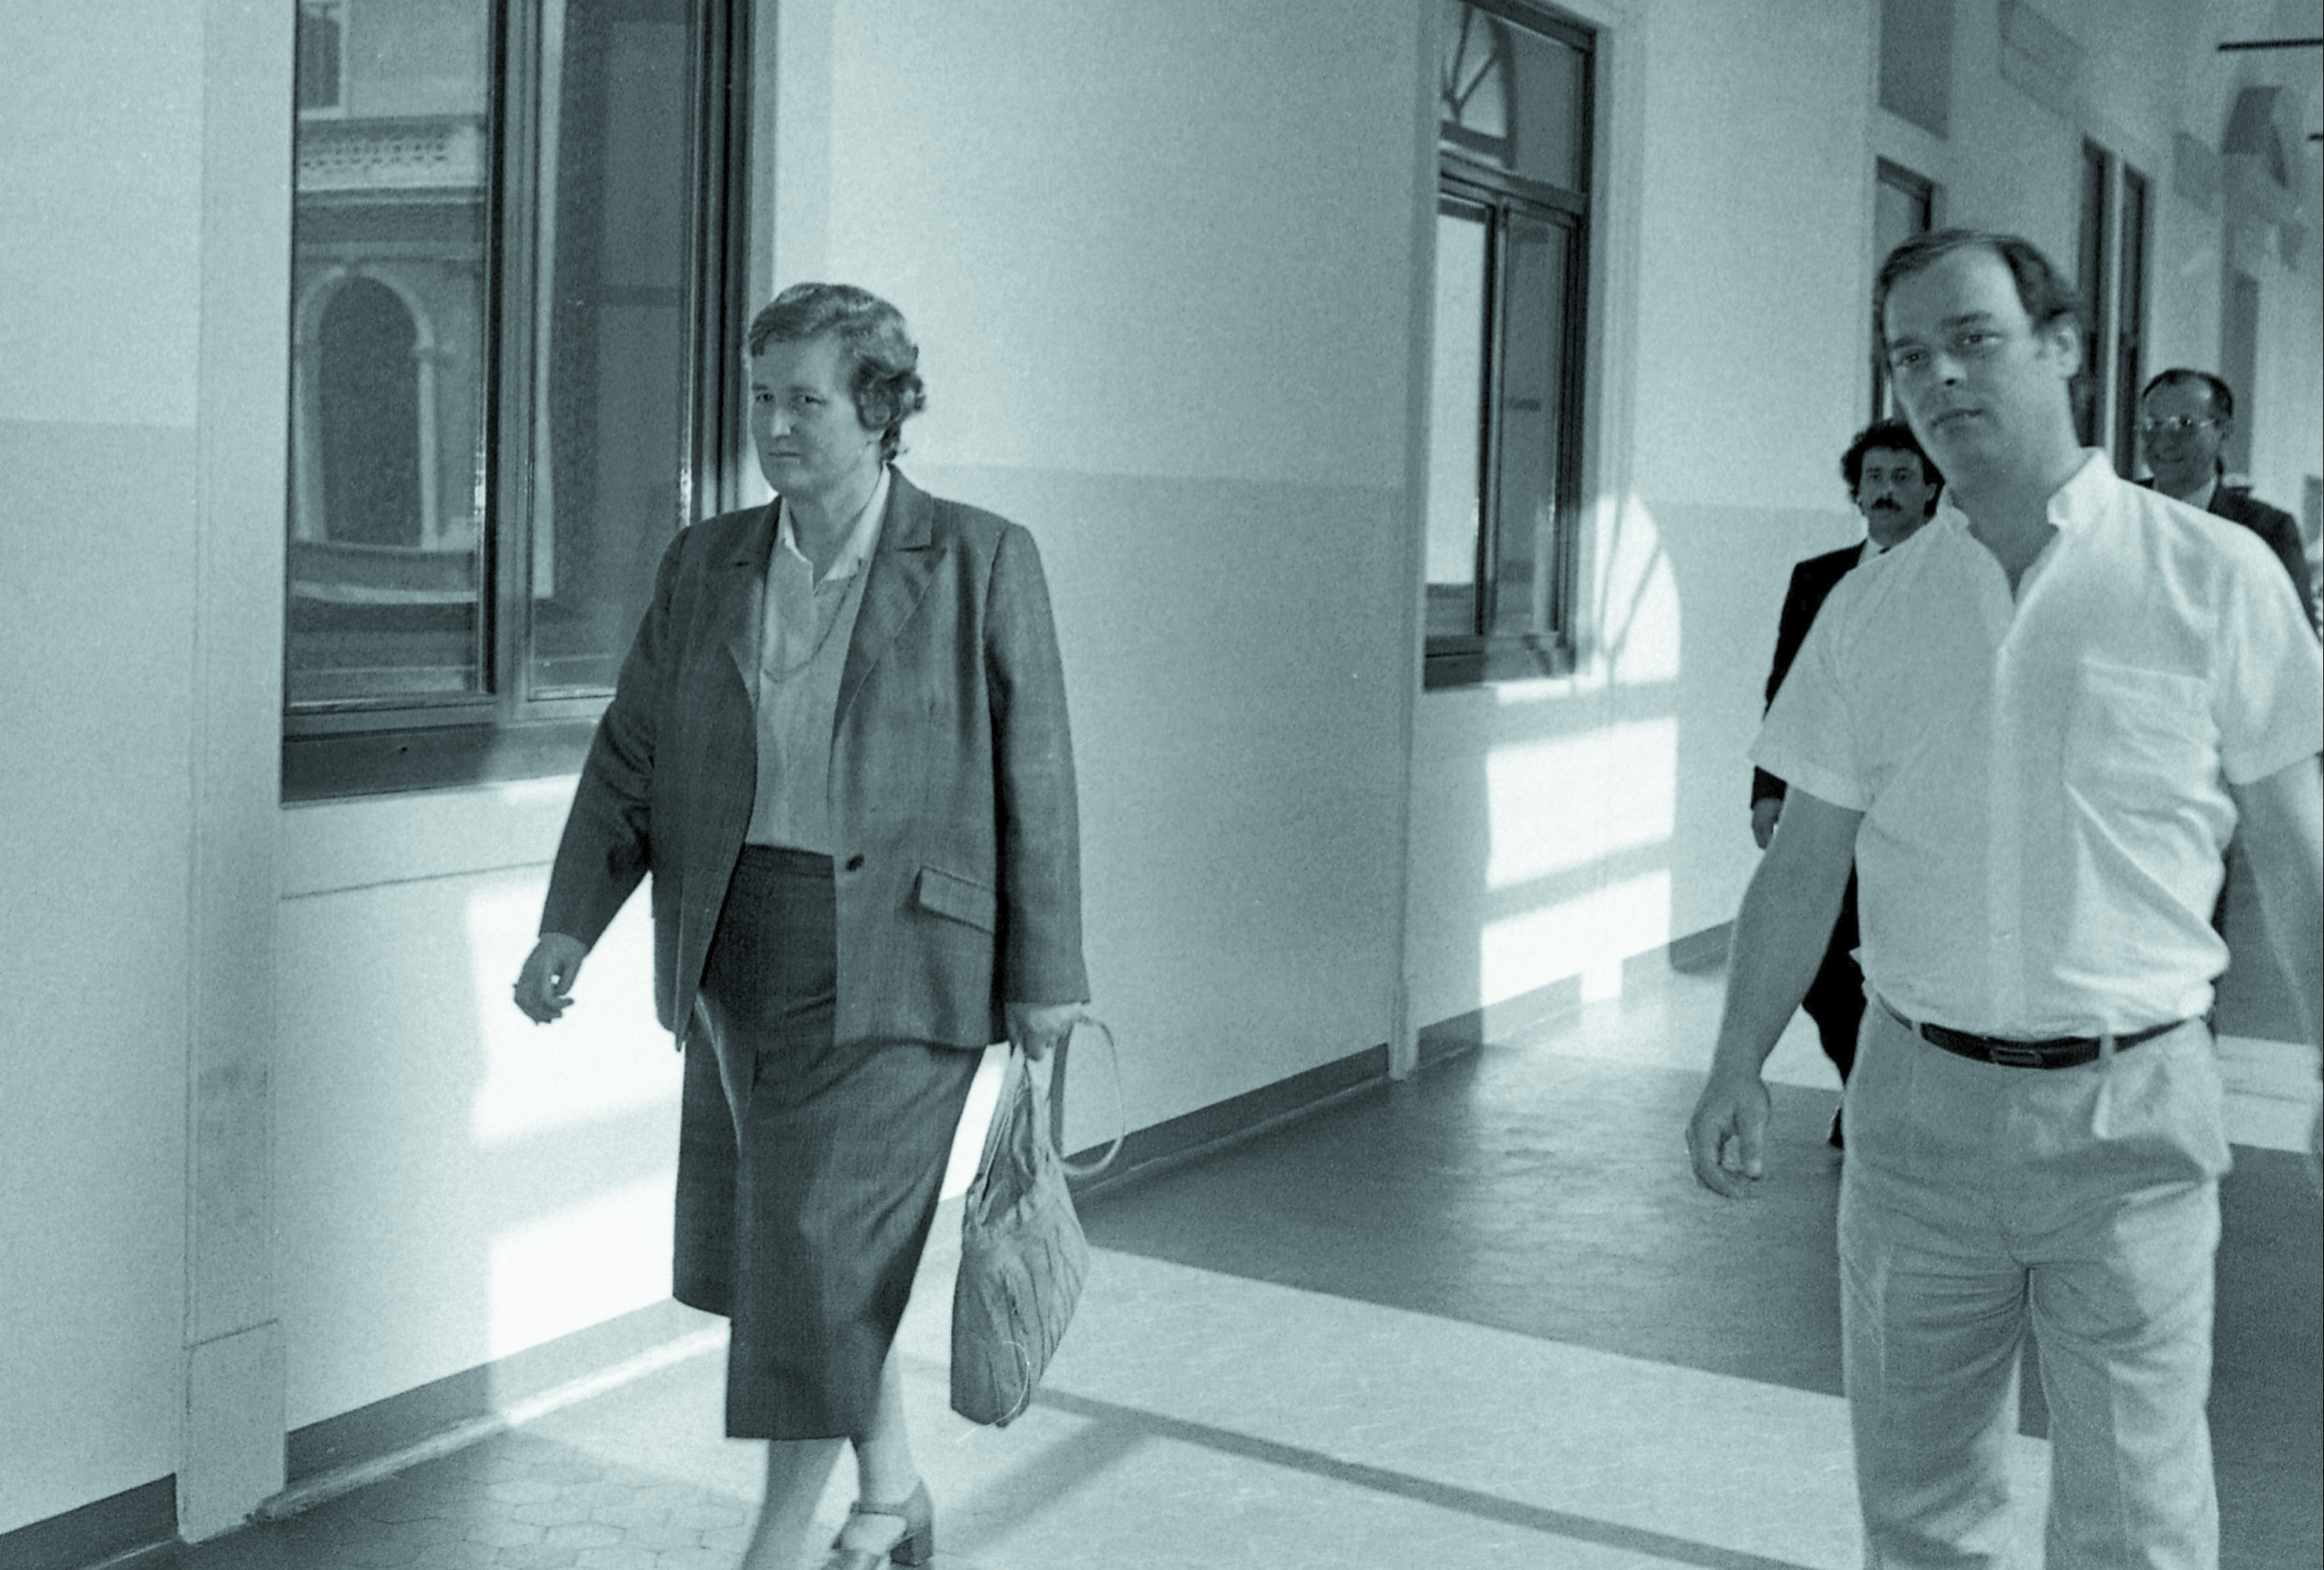 Tina Anselmi in visita all' ospedale di Padova dove è ricoverato Enrico Berlinguer (Fotogramma)